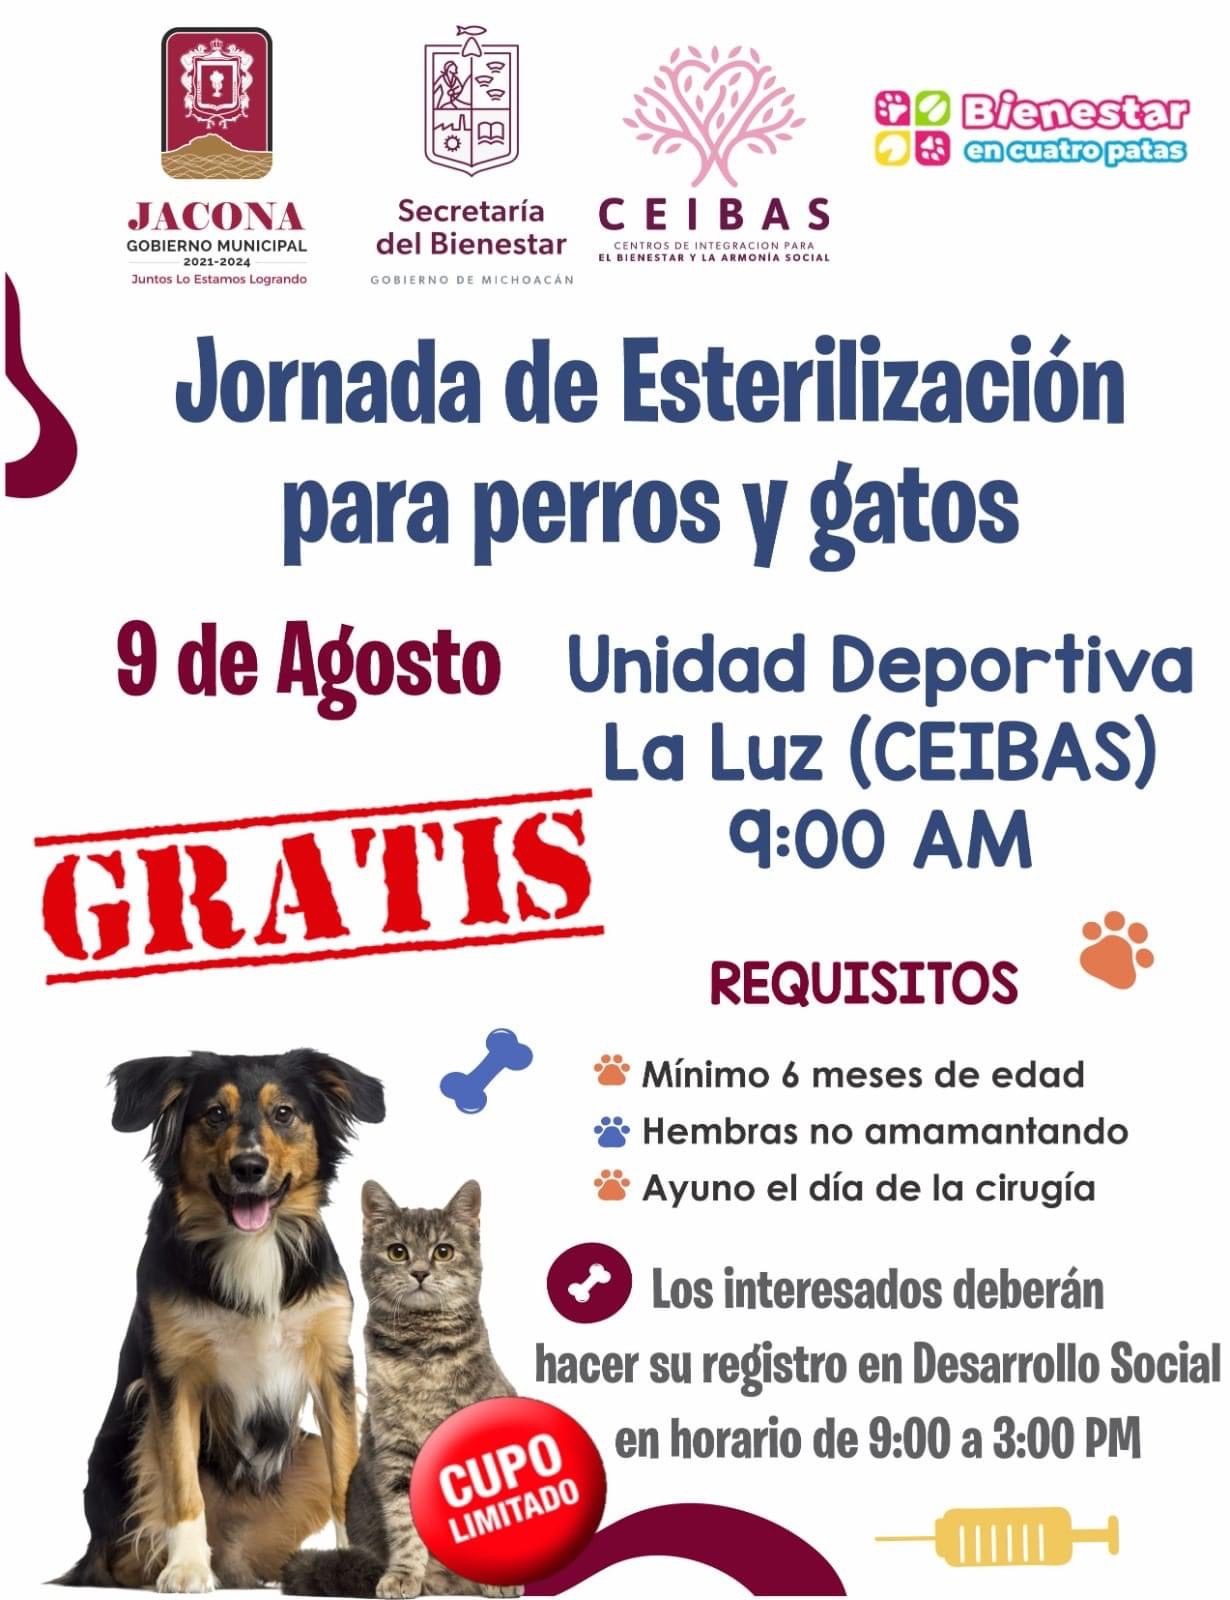 Nueva jornada gratuita de Esterilización de Mascotas en Jacona